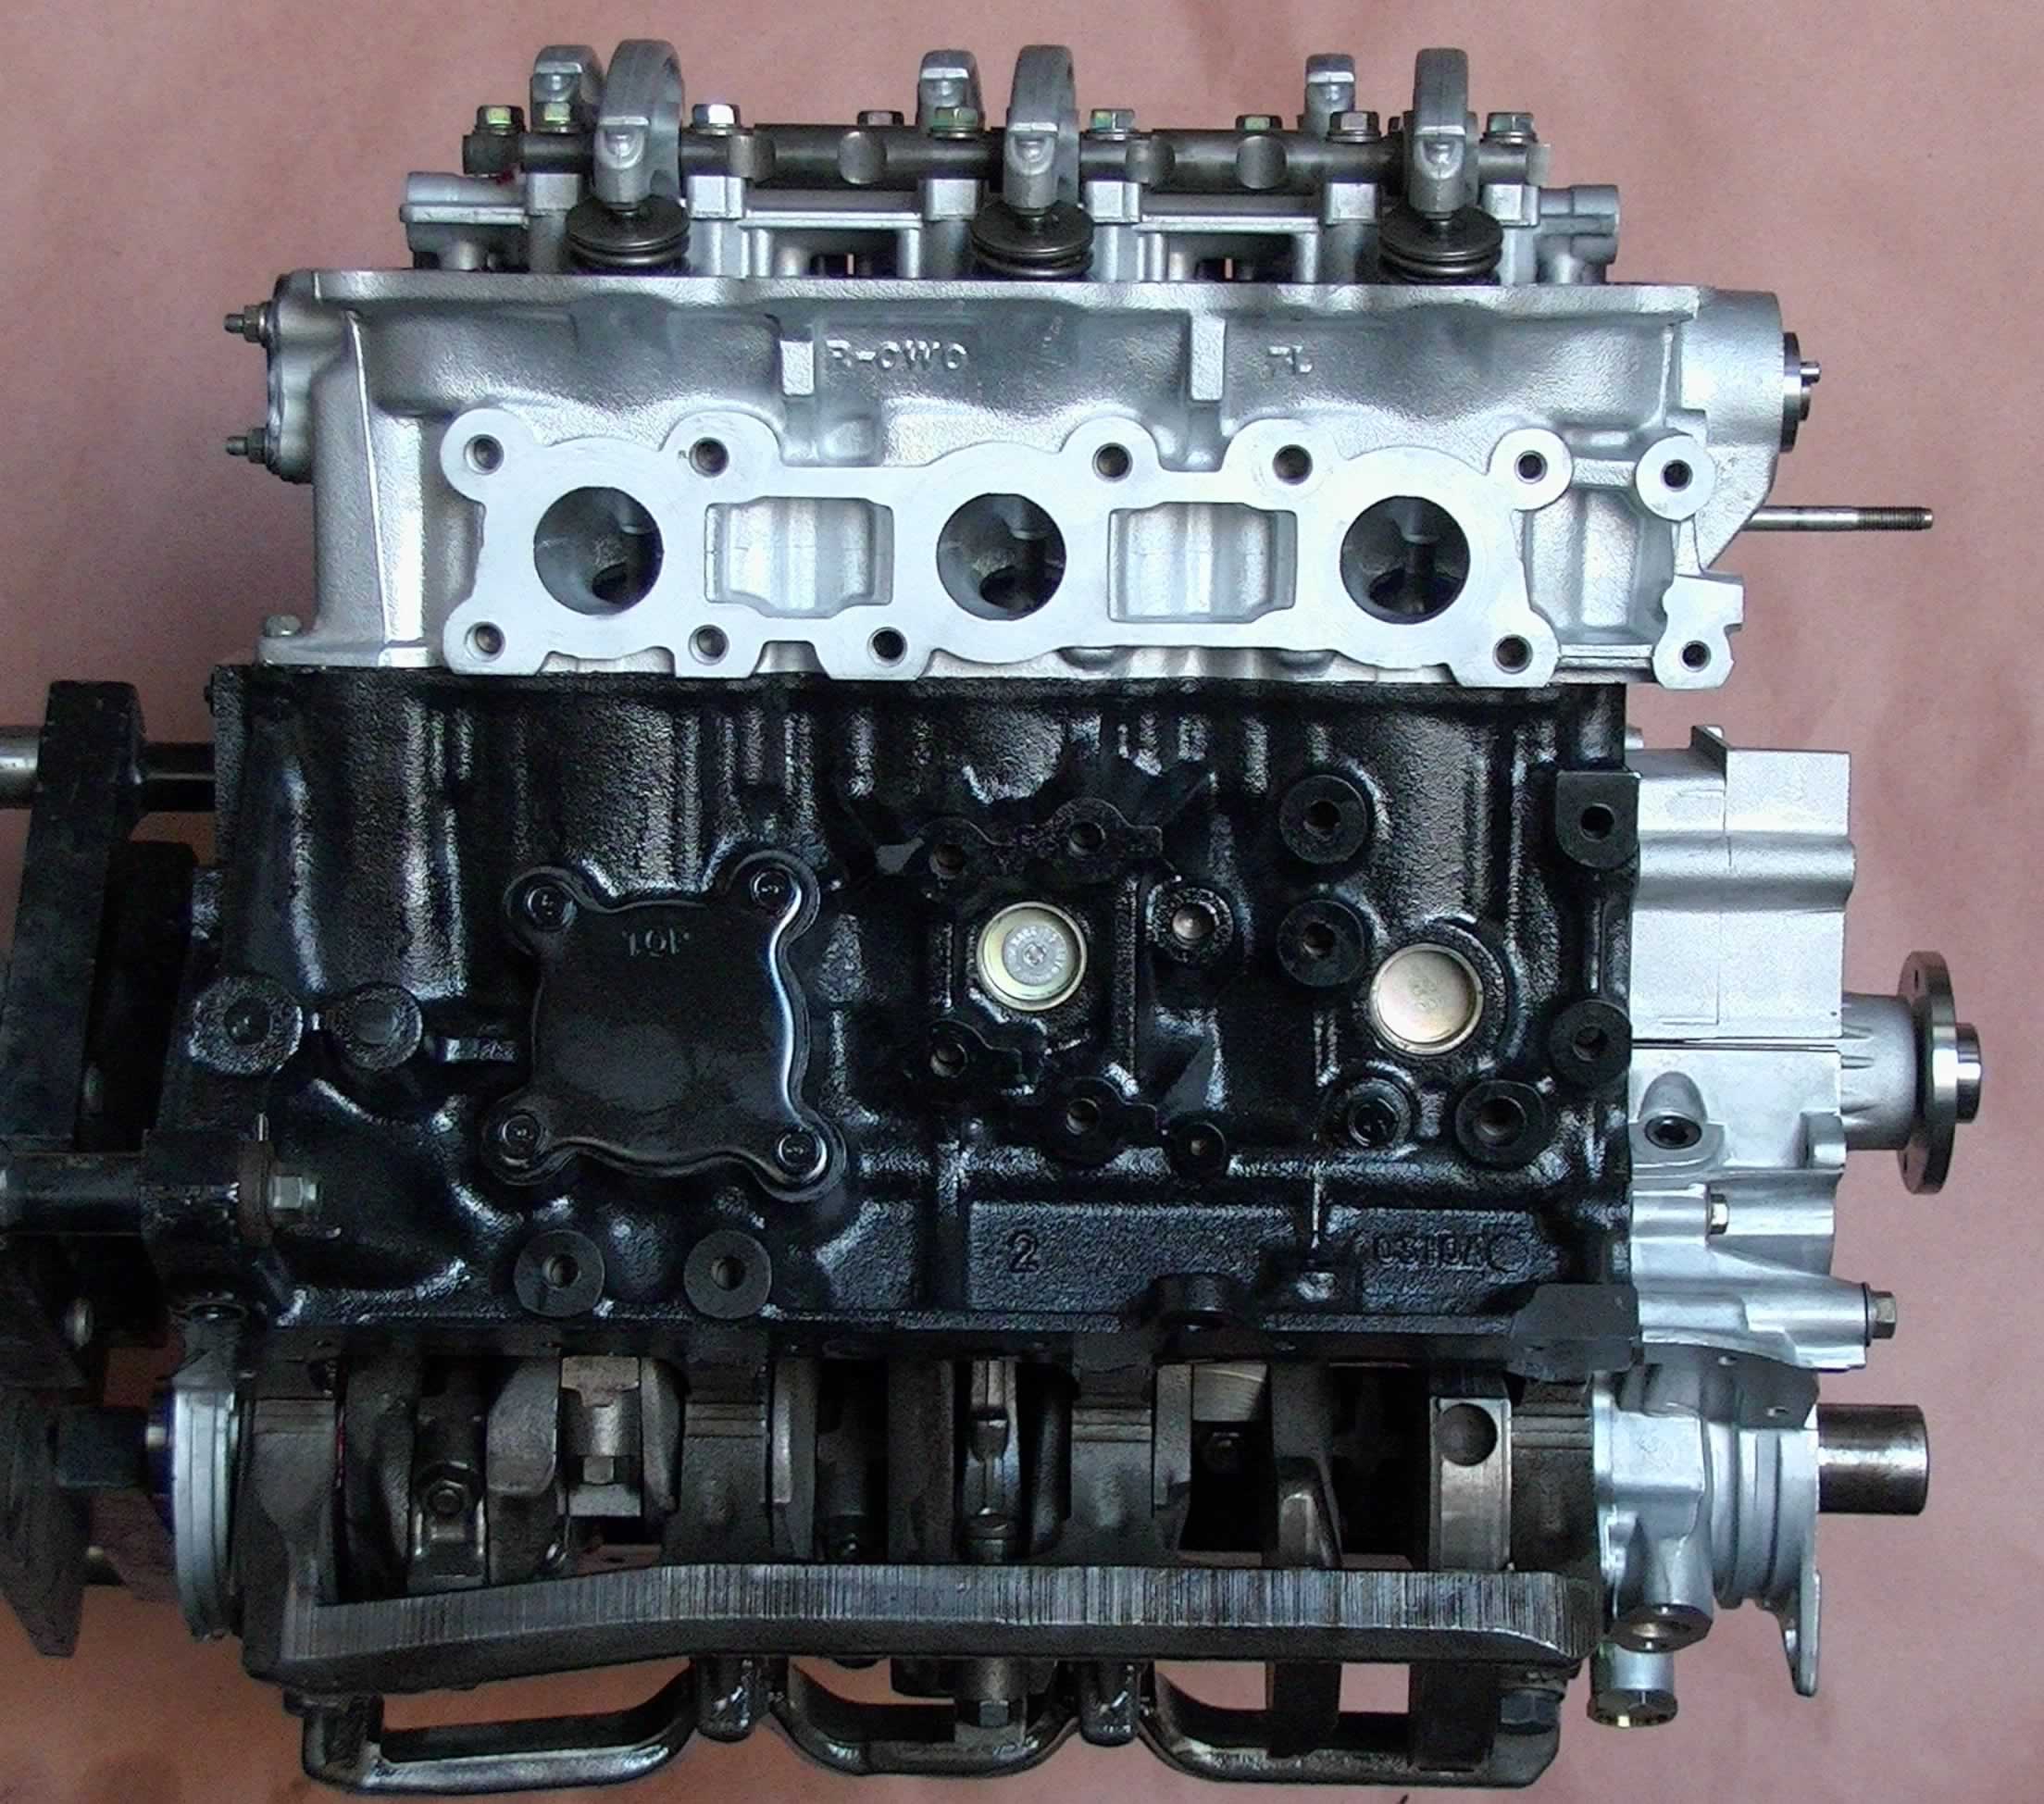 2000 Nissan Xterra Engine 3.3 L V6 - thedesign7